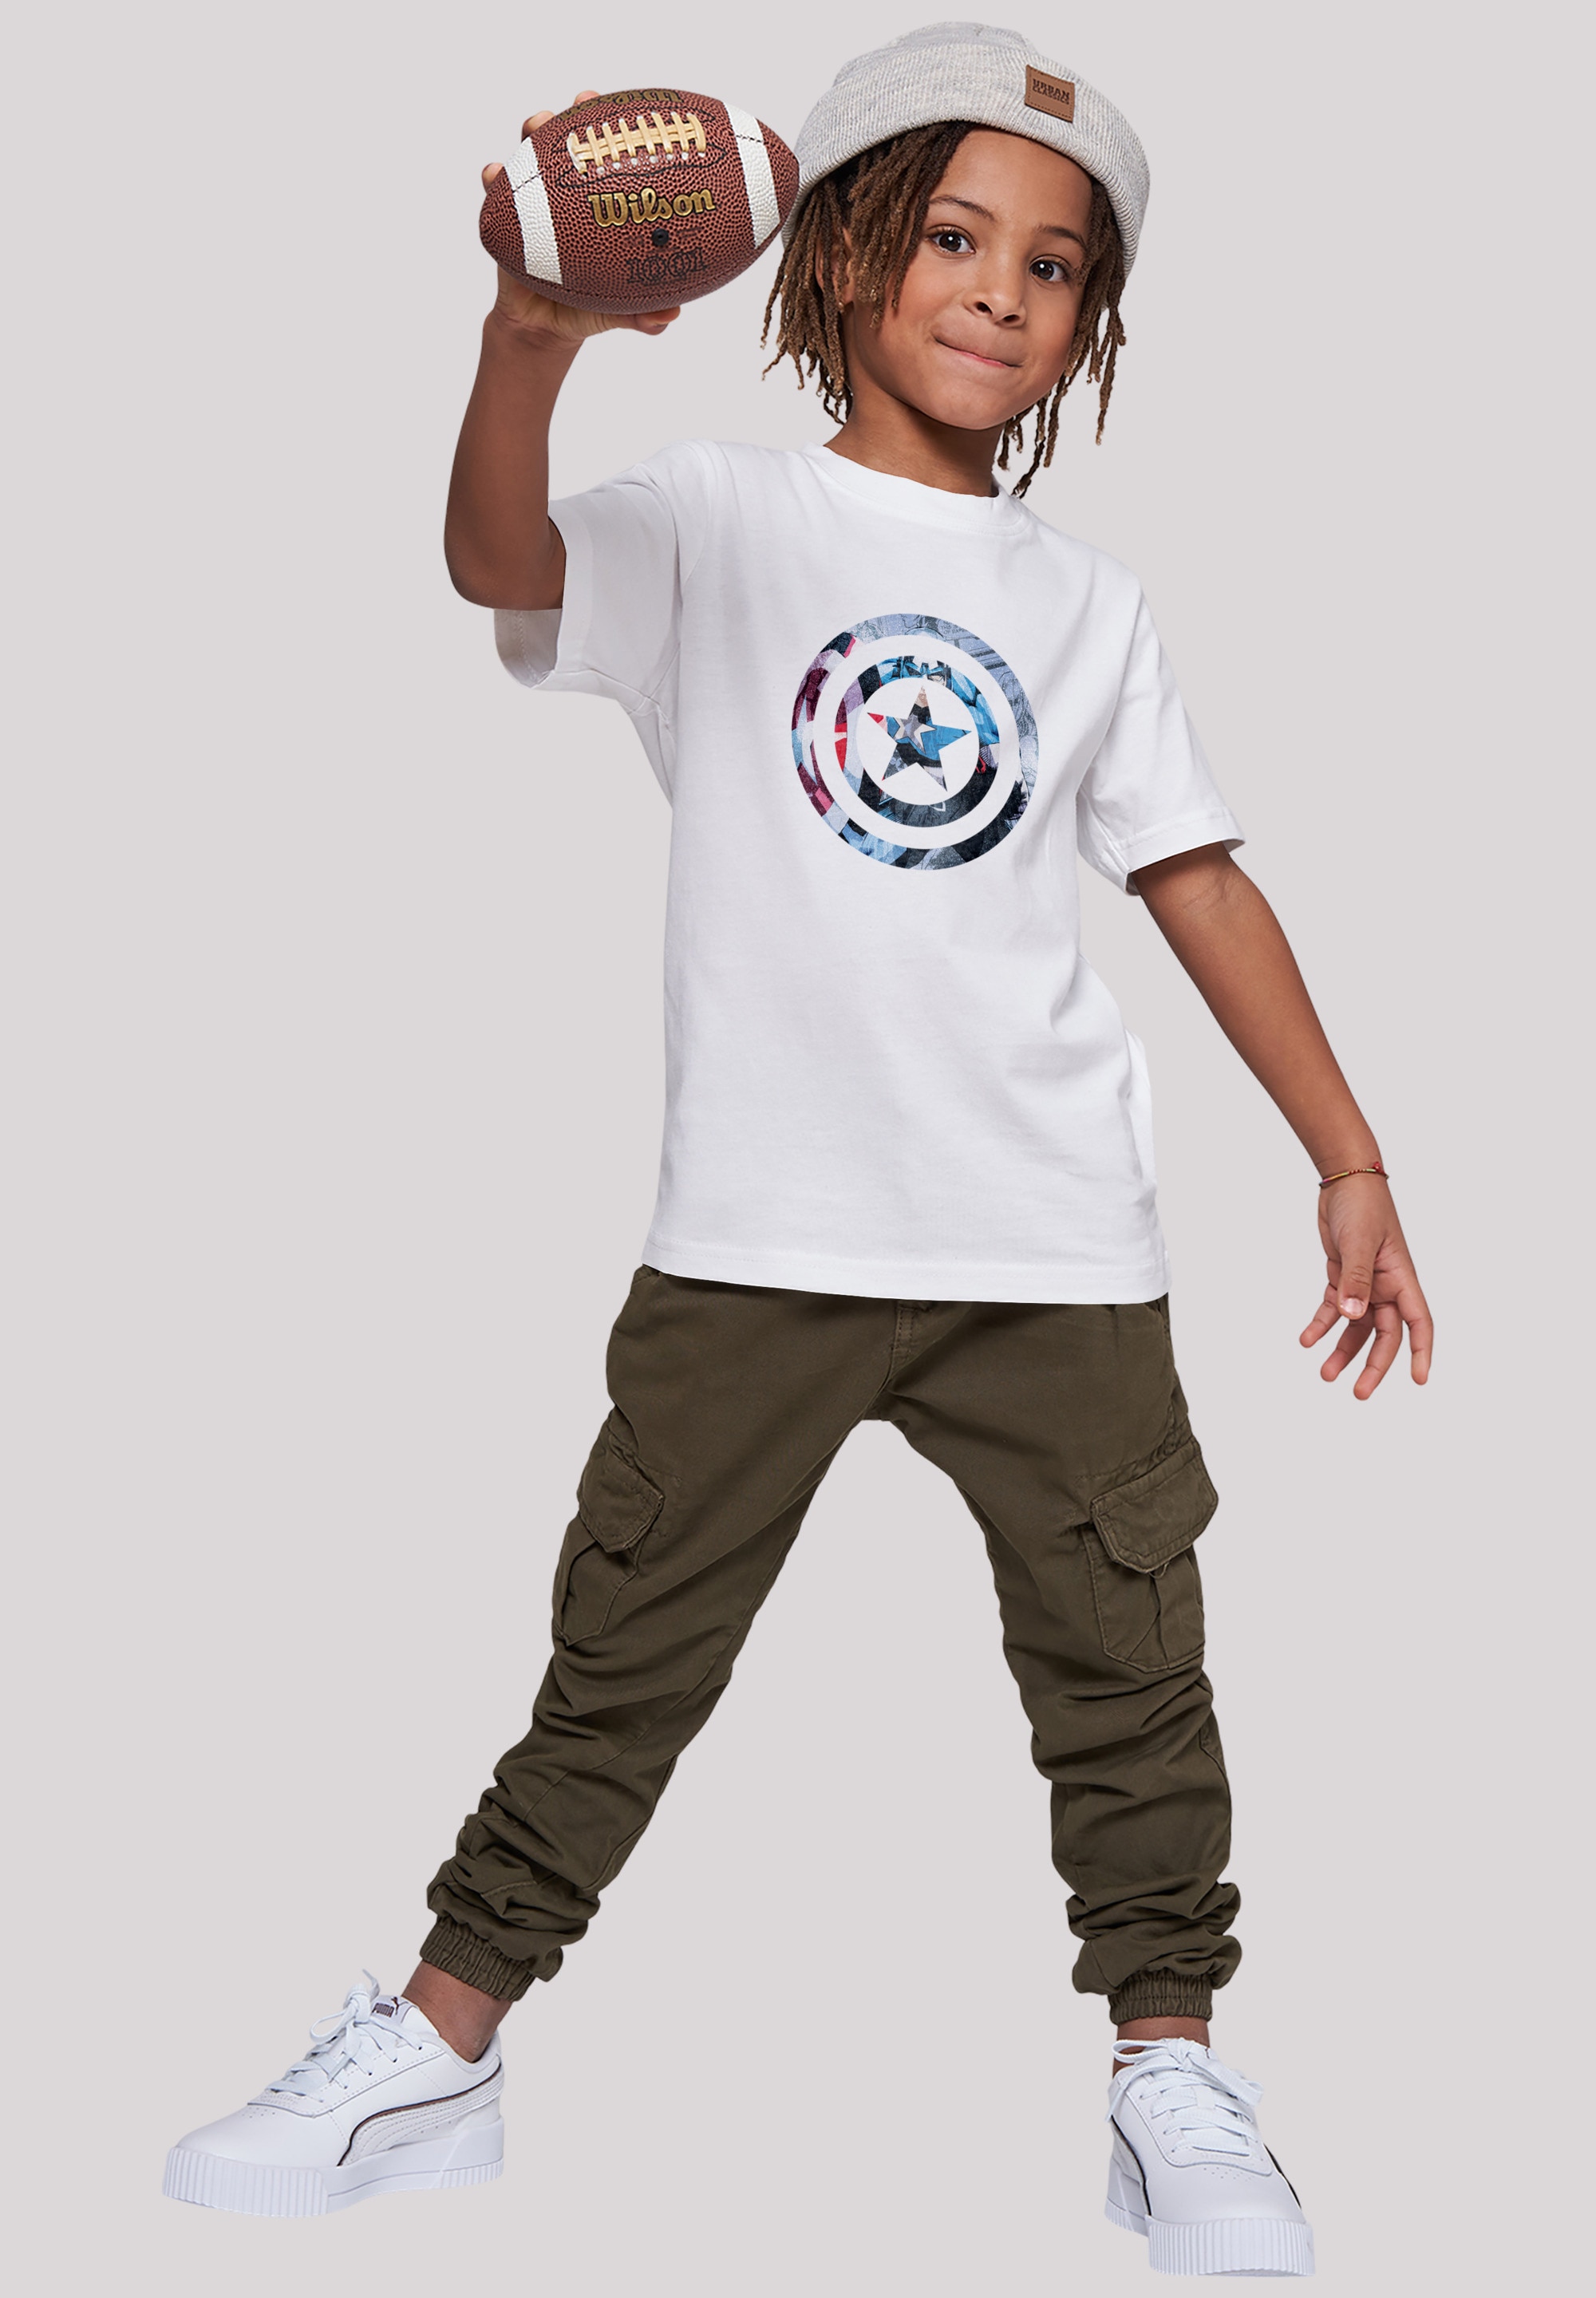 Kinder,Premium Avengers Unisex »Marvel Superhelden America Montage | für F4NT4STIC BAUR T-Shirt Merch,Jungen,Mädchen,Logo Symbol«, ▷ Print Captain